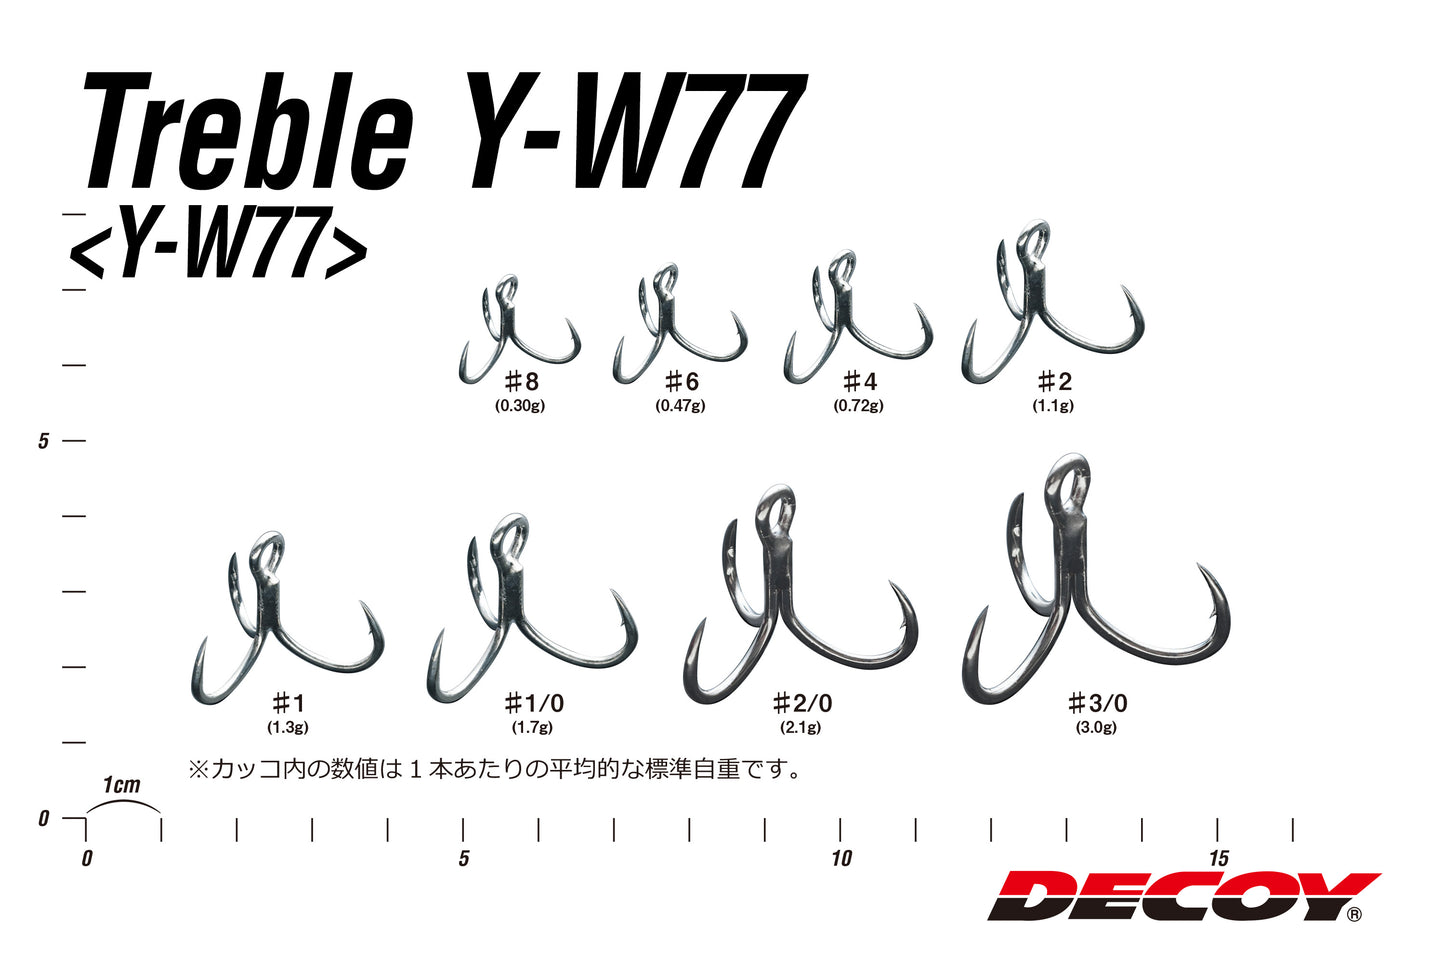 Treble Y-W77